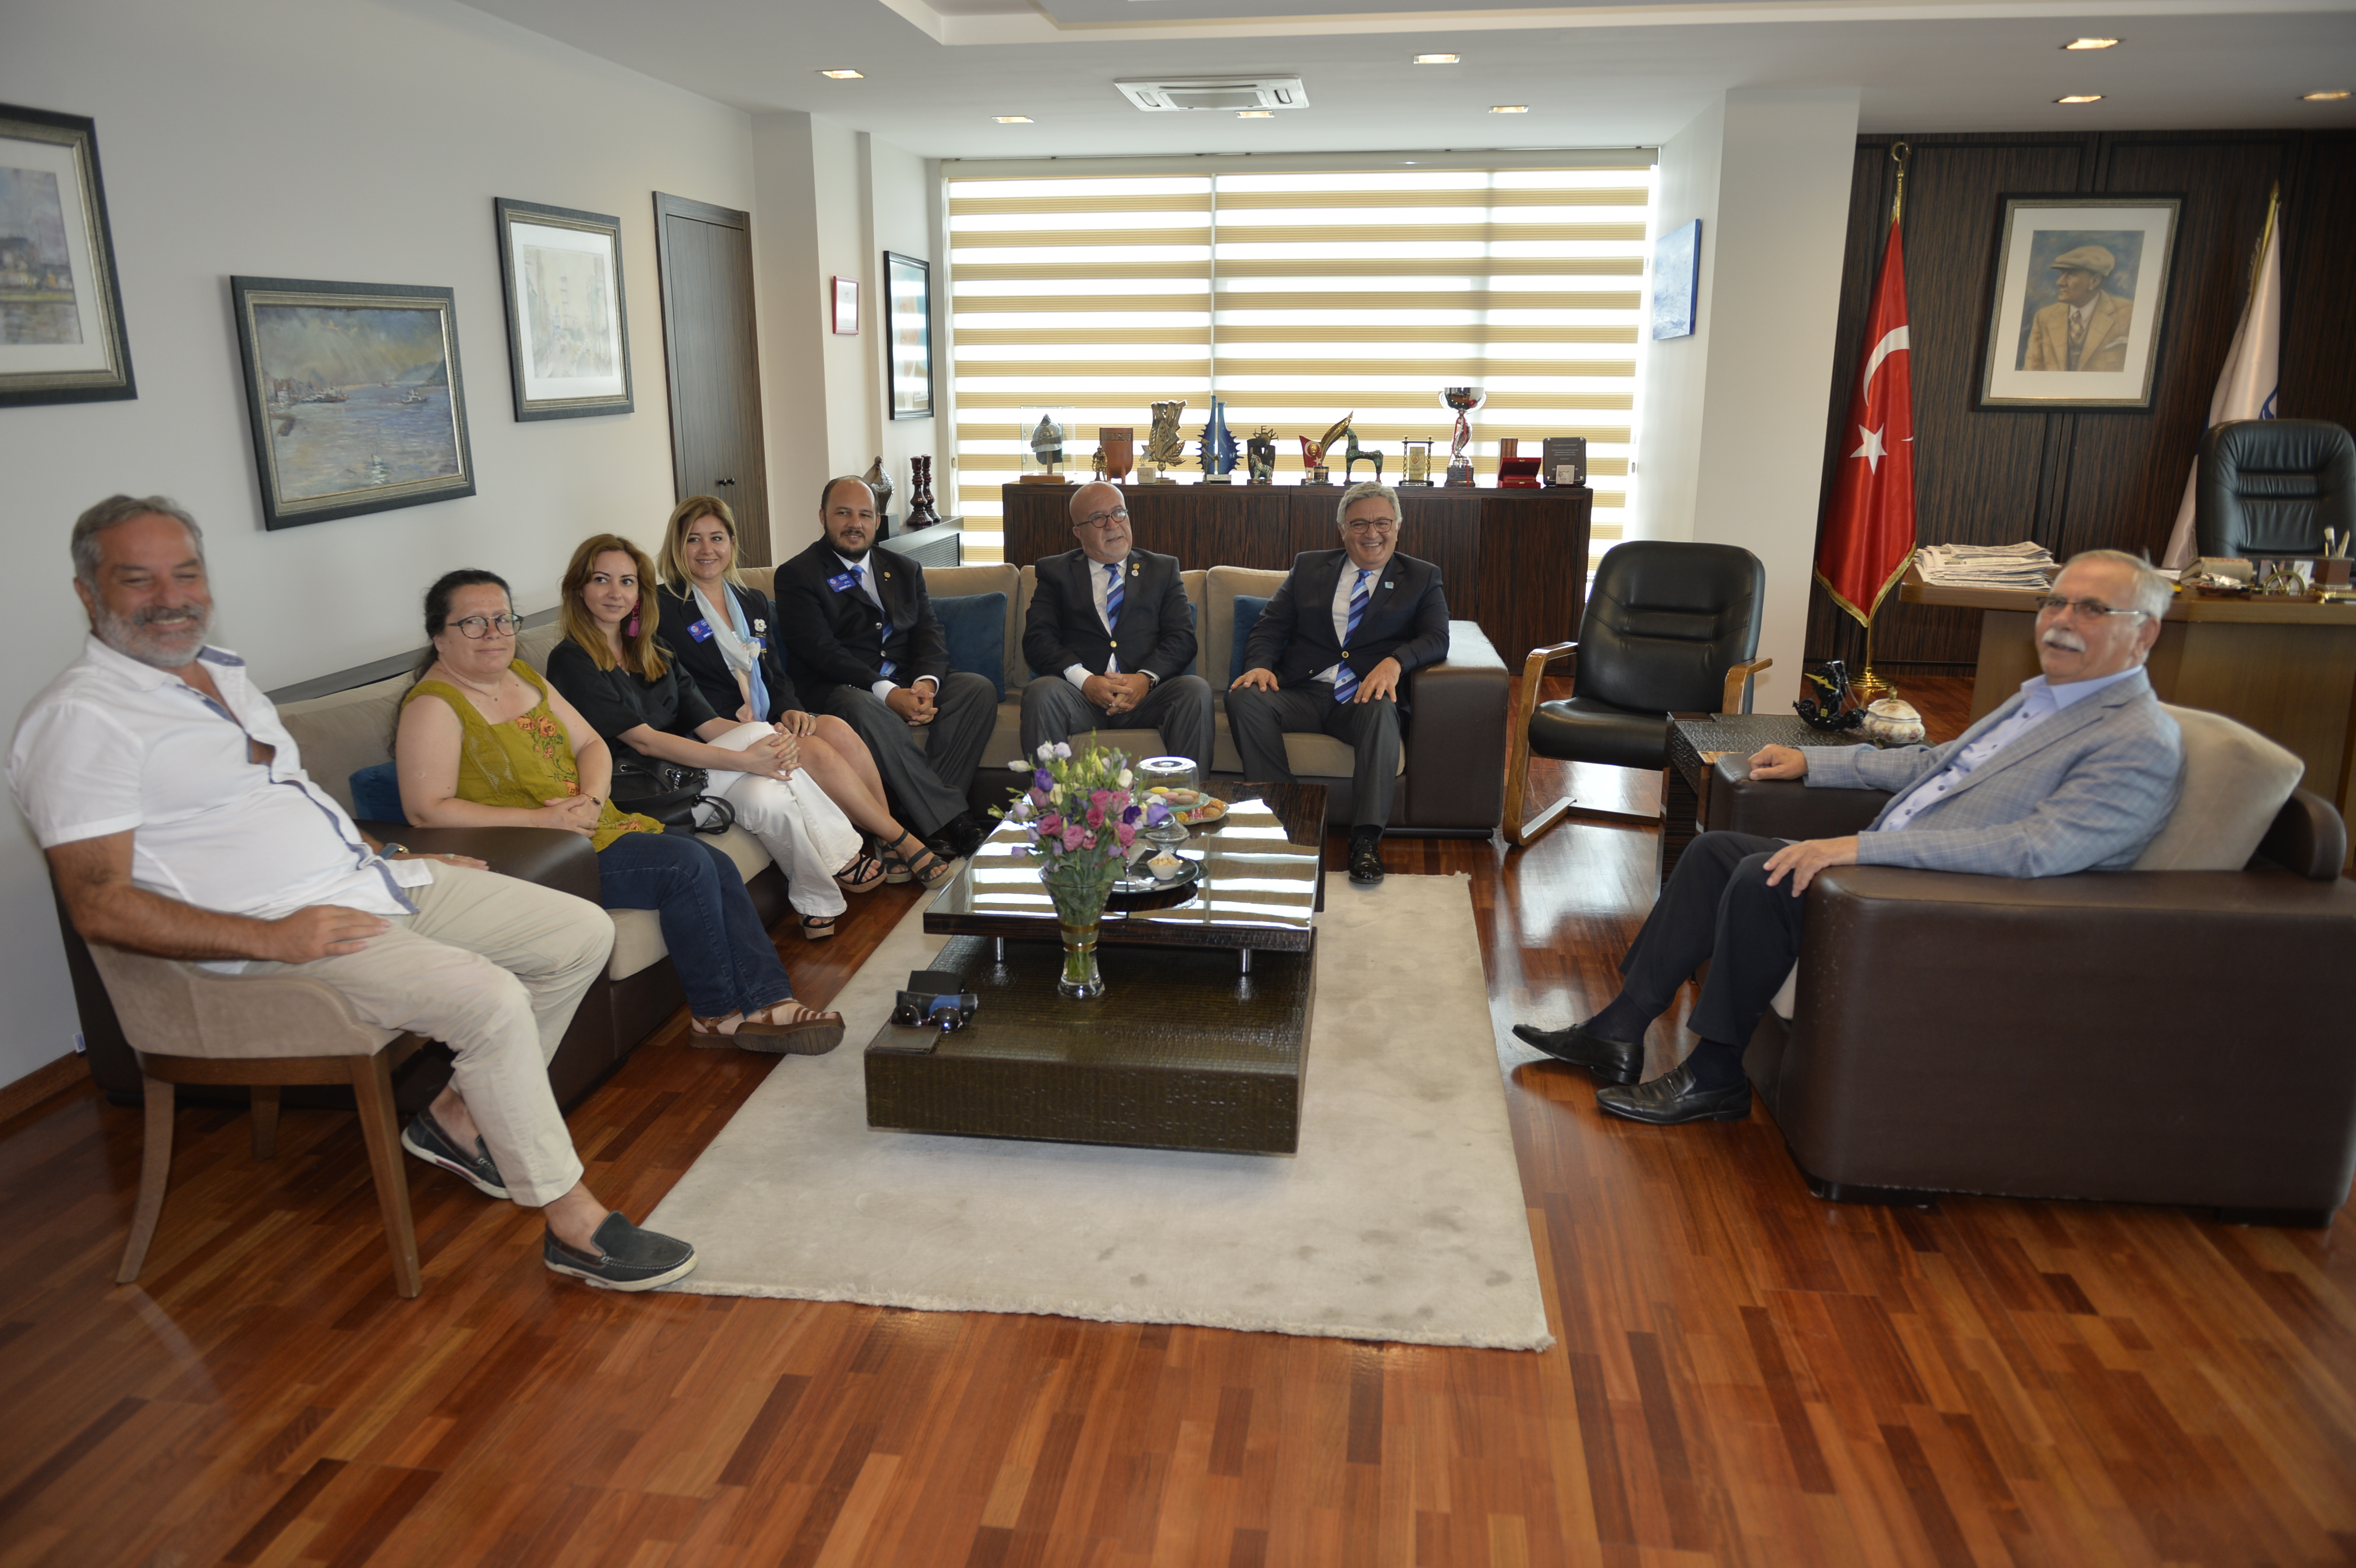 Çanakkale Rotary Kulübü'nden Başkan Gökhan'a Ziyaret